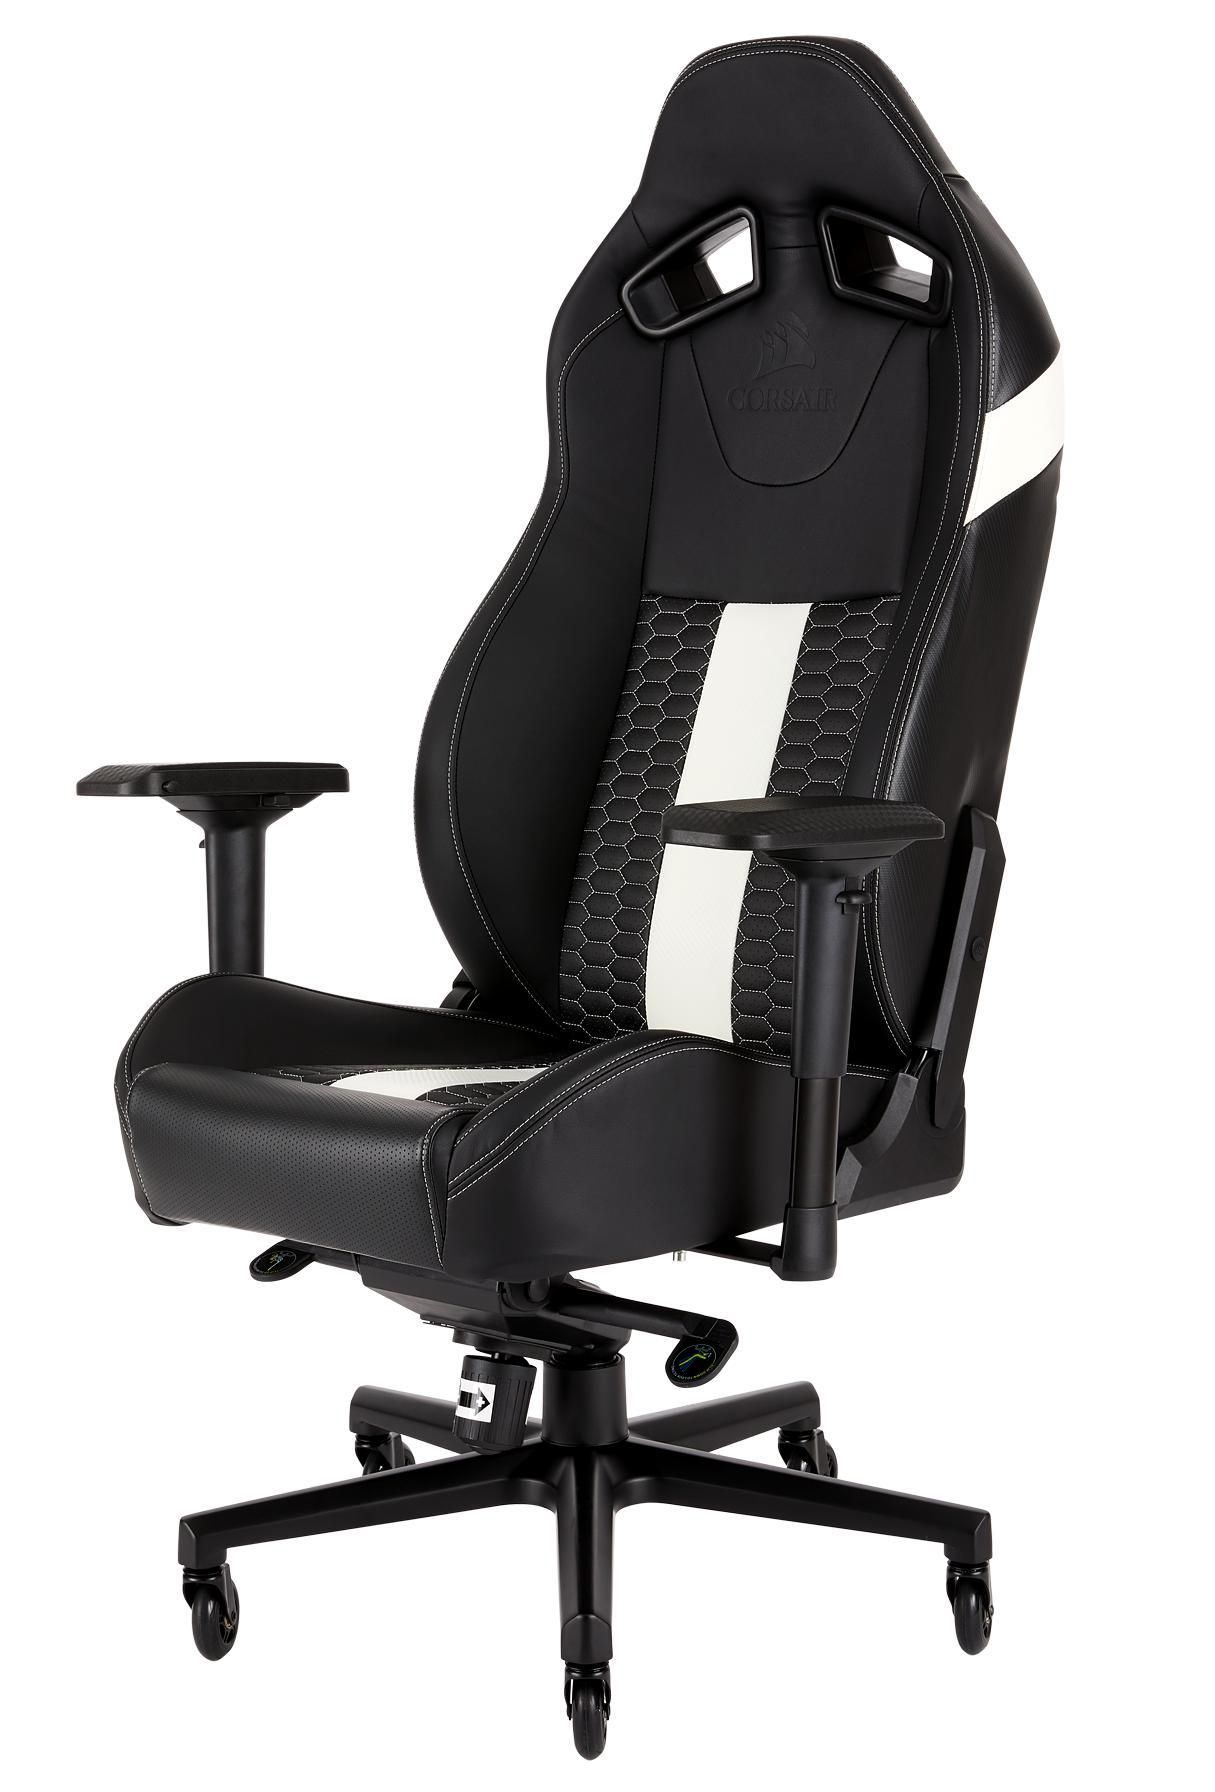 Corsair CF-9010007-WW T2  blackWhite Gaming Chair 